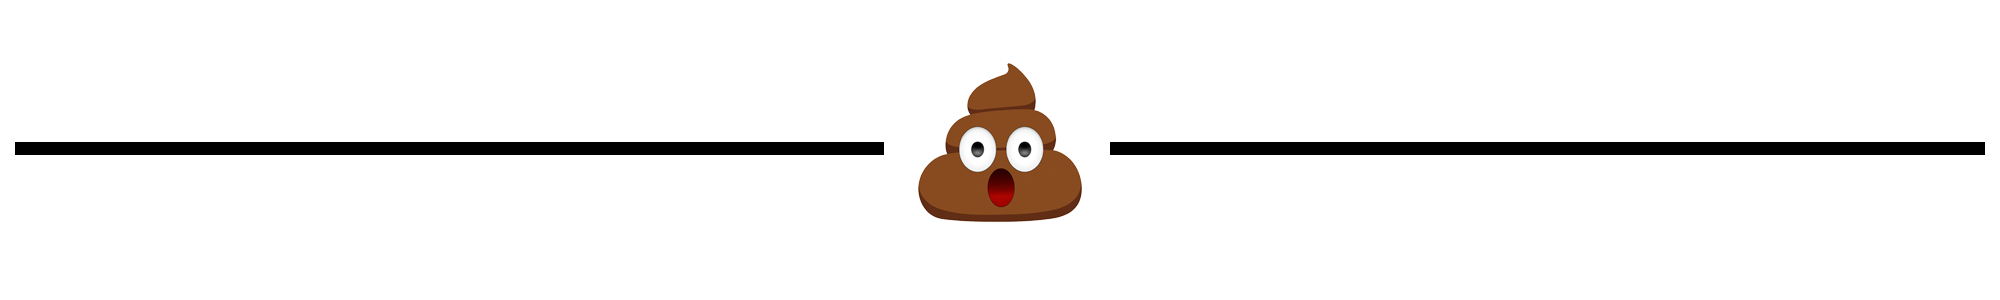 poop clipart animal waste